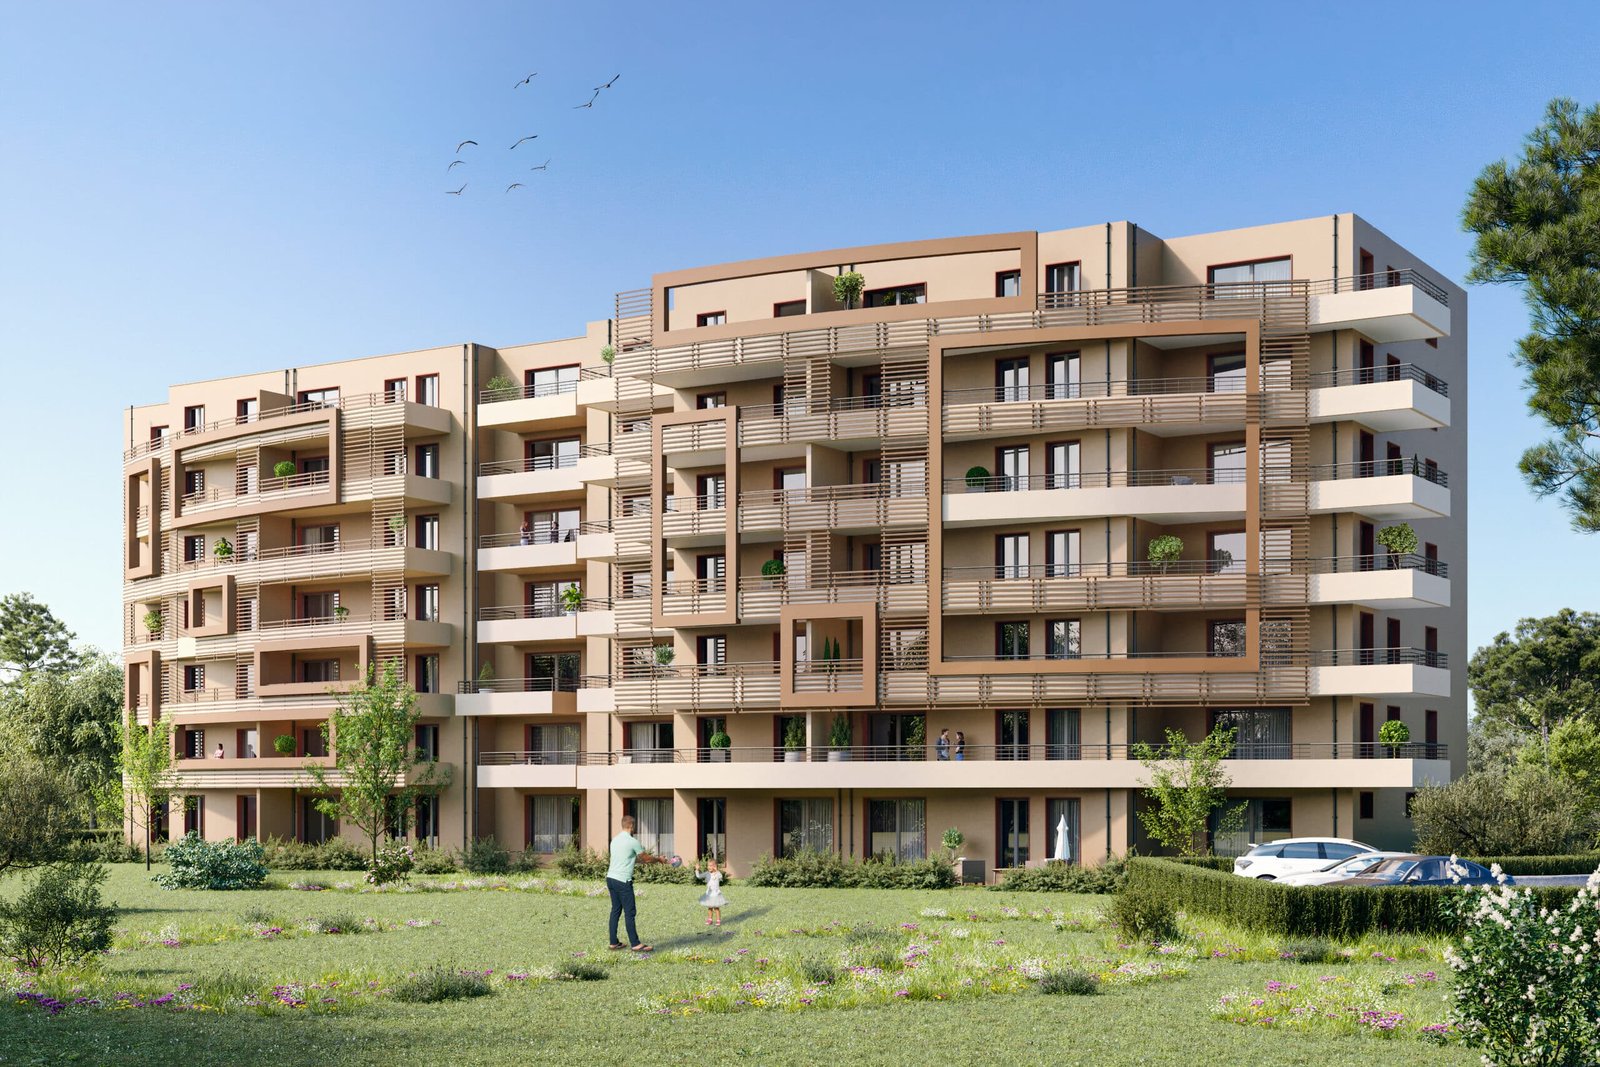 La résidence l'Althéa à Ajaccio propose des appartements du T2 au T3, à partir de 150 000€, pour les acquéreurs en résidence principale ou l'investissement locatif.